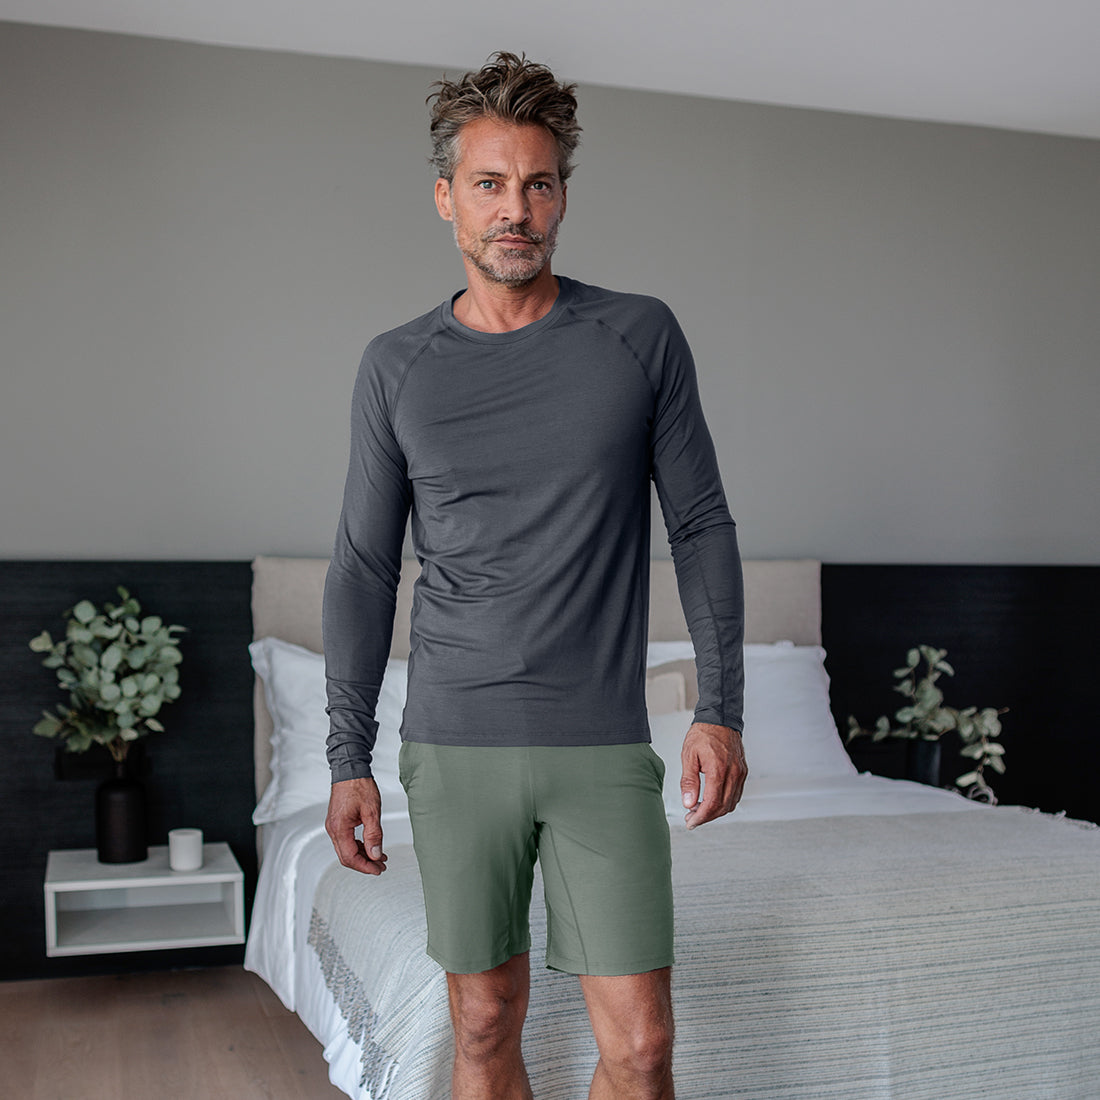 Pyjamas Shorts Herren || Balsam green